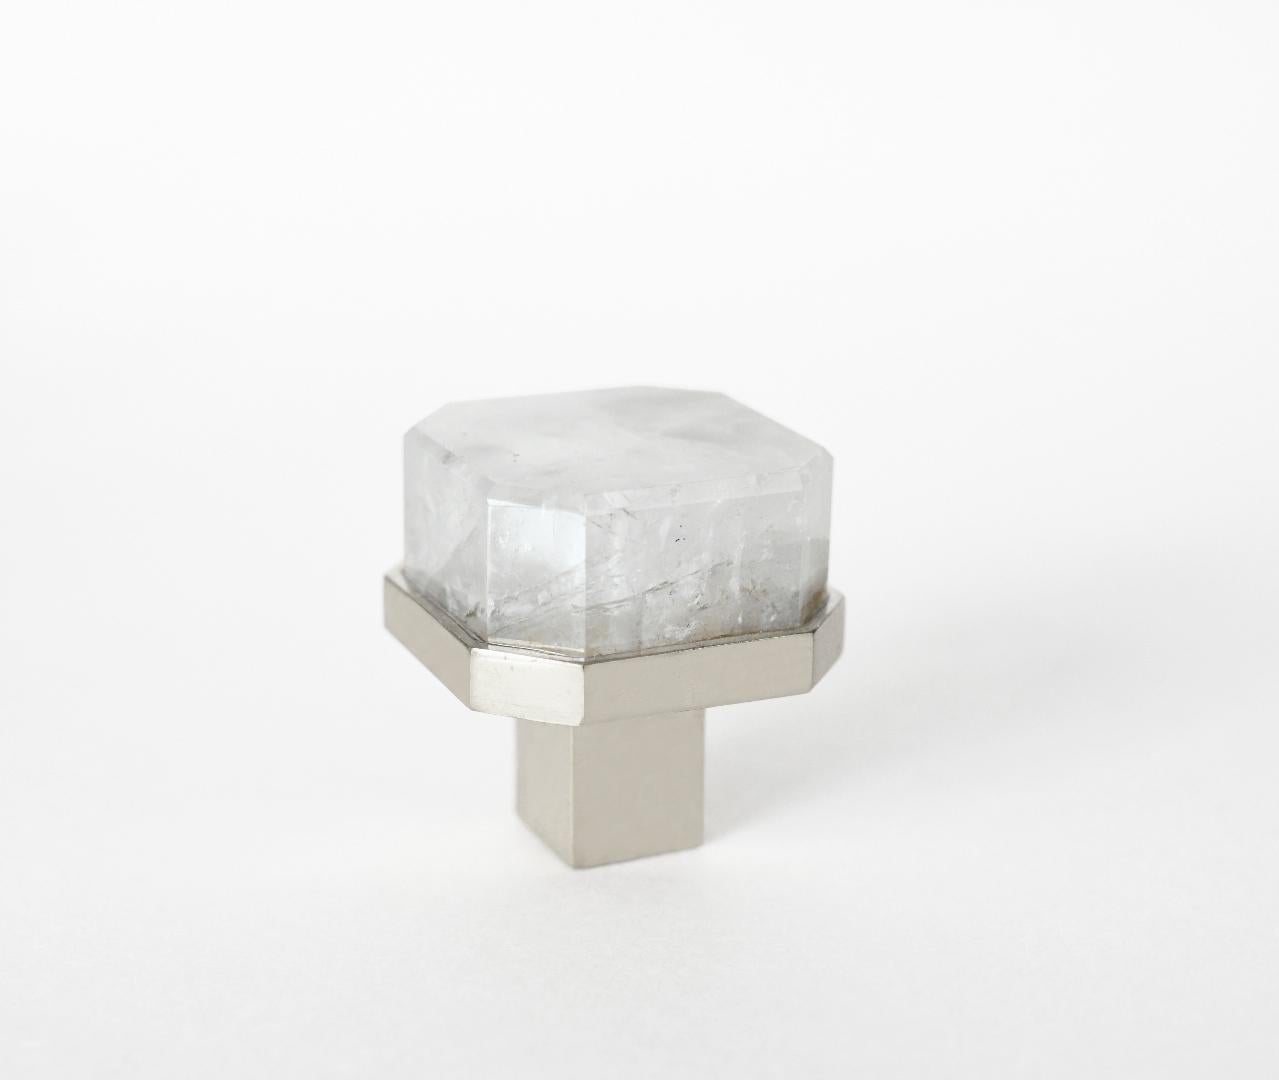 Achteckiger Bergkristall-Quarzknopf mit vernickeltem Sockel. Erstellt von Phoenix Gallery, NYC.